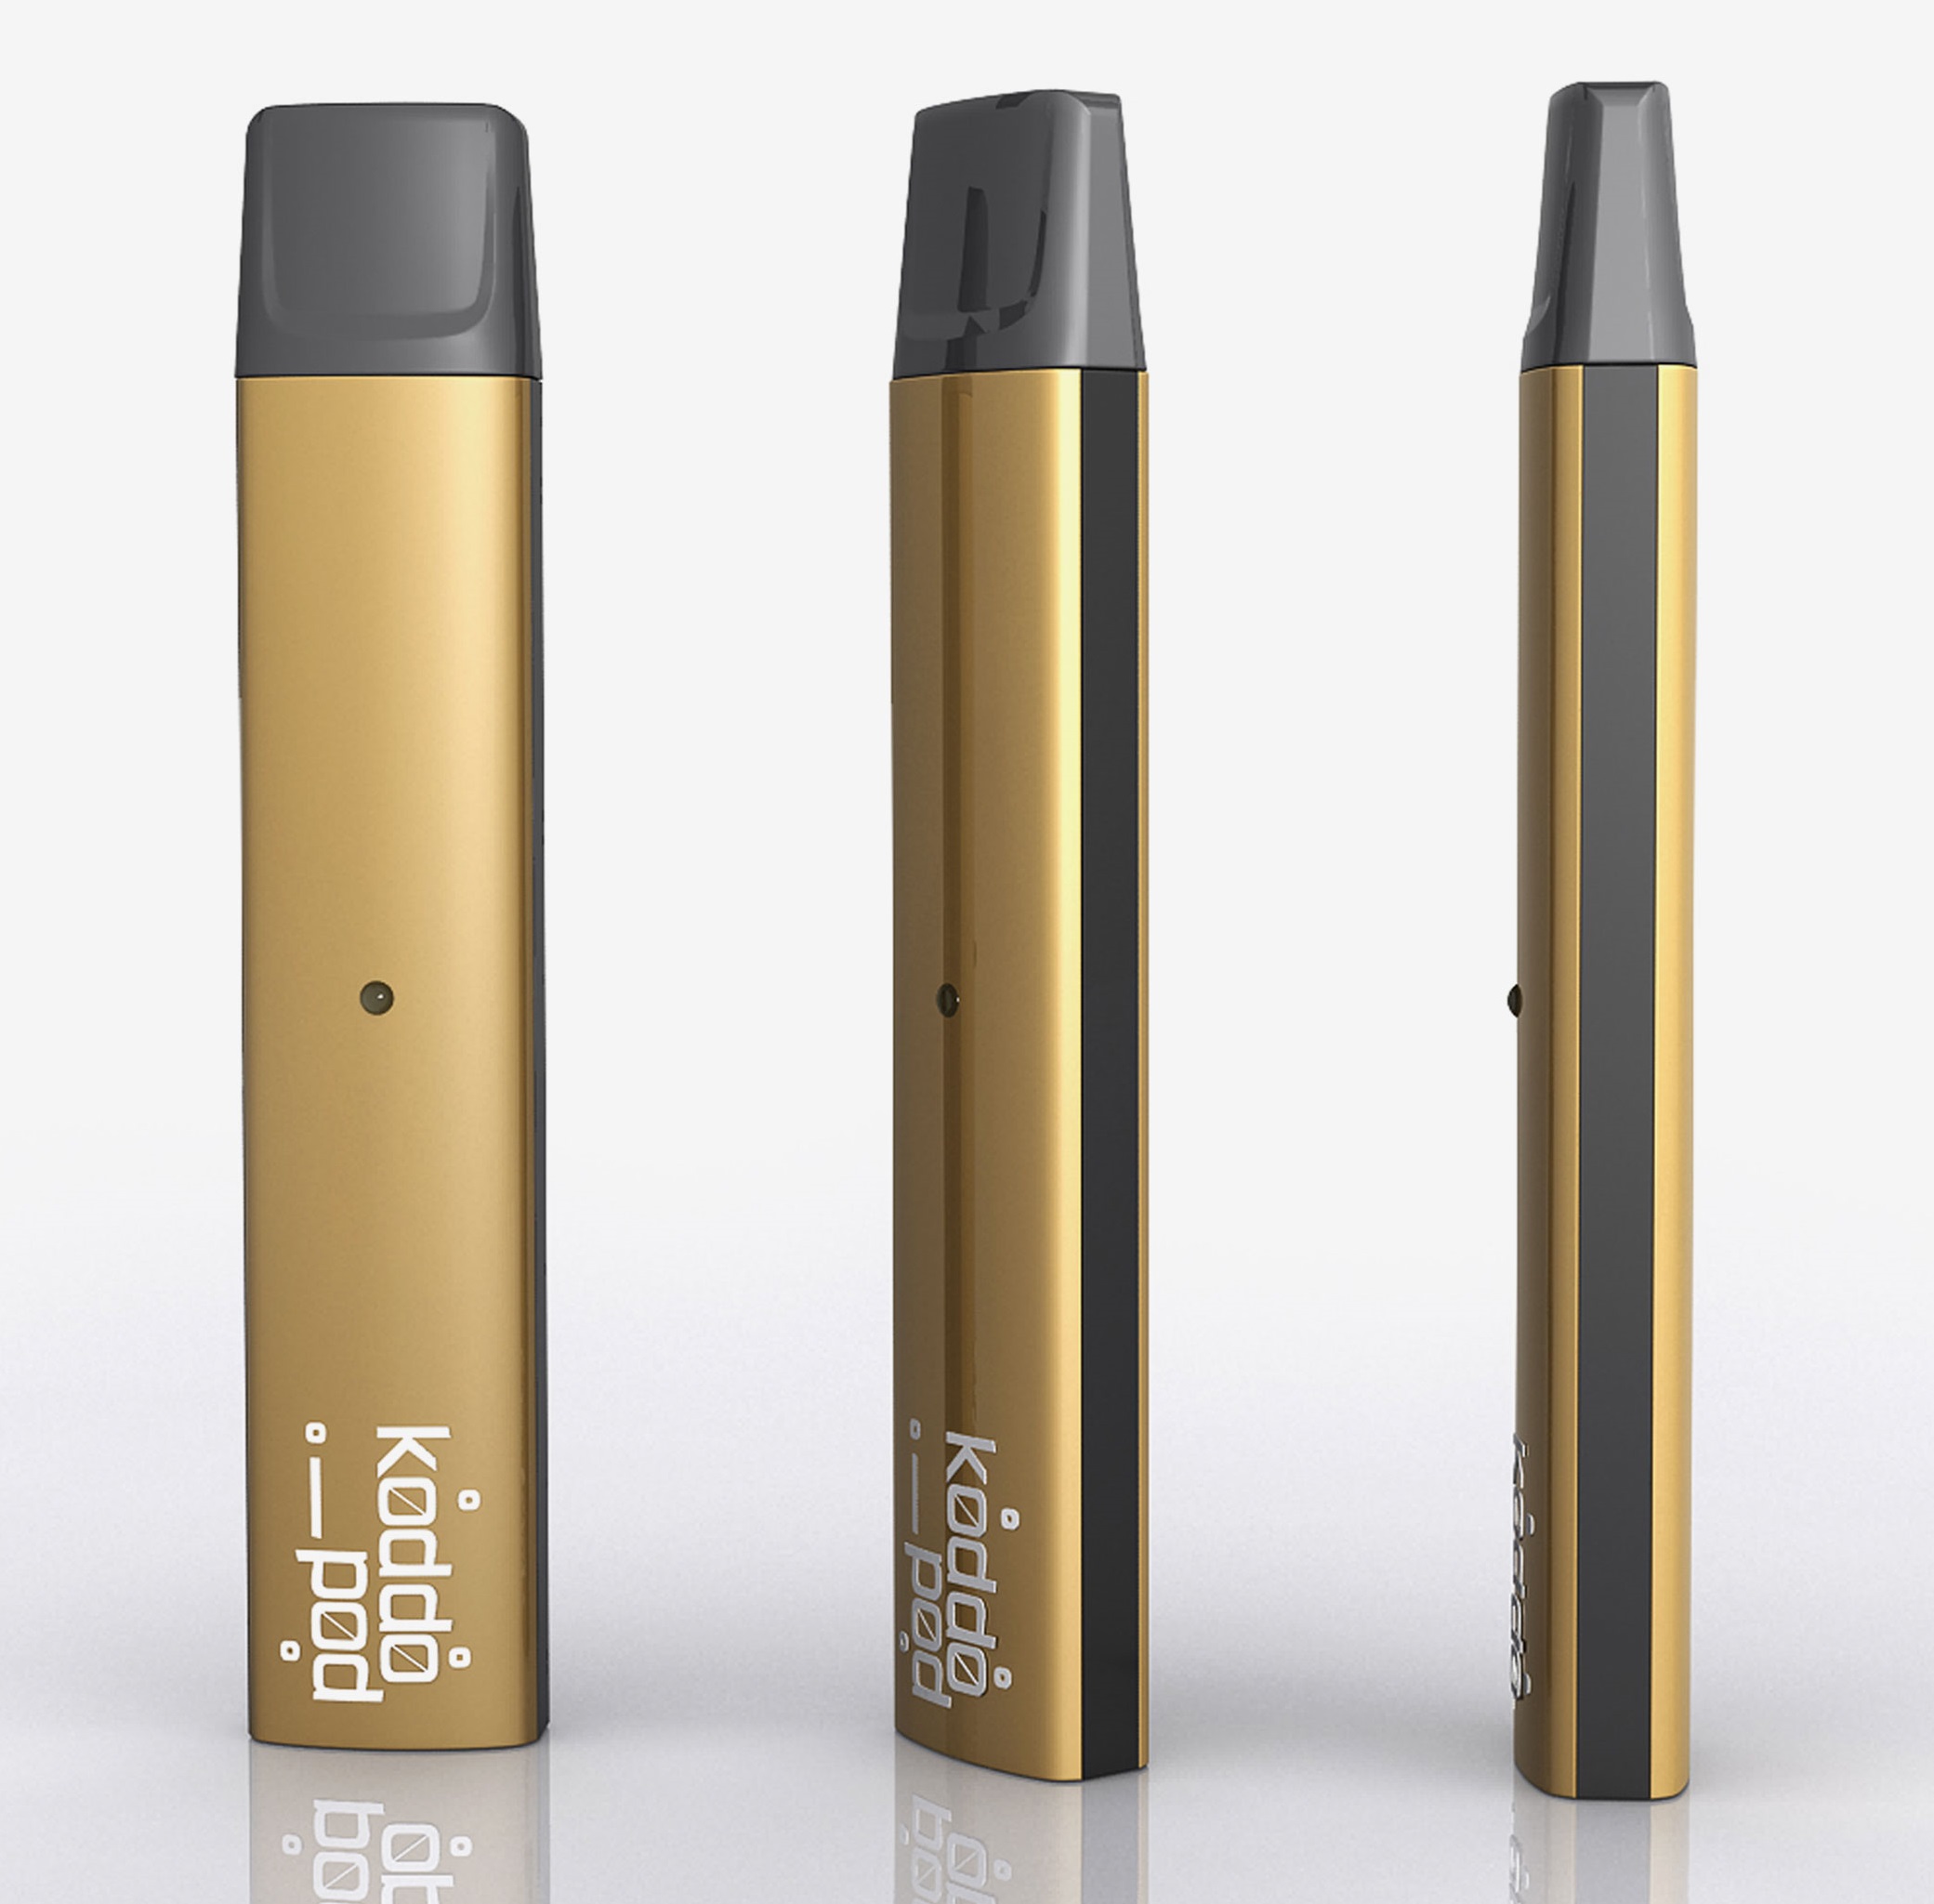 koddopro nano e cigarette 350mah design et compact